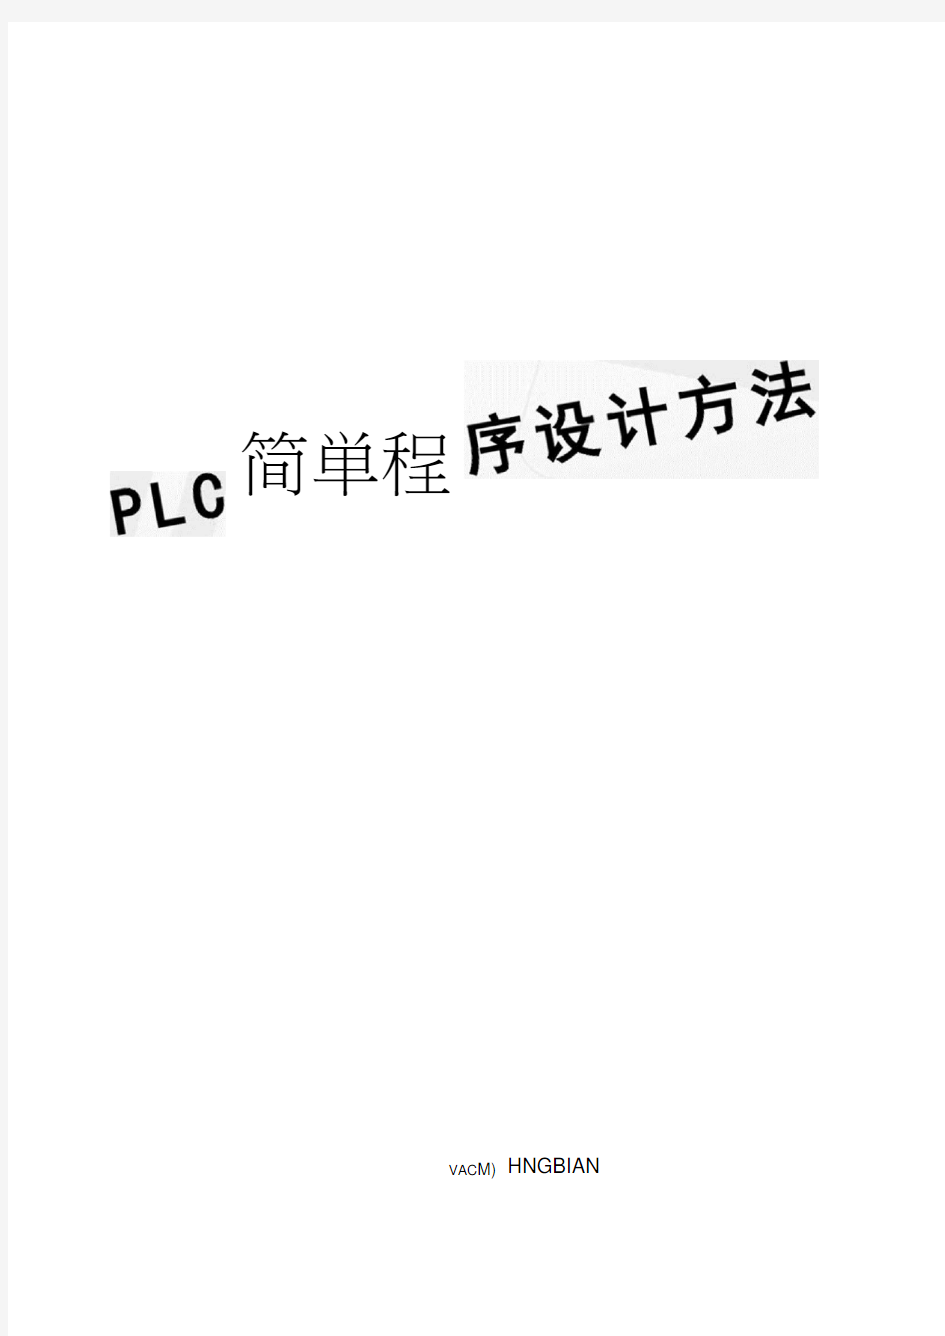 PLC简单程序设计方法(20210119130915)